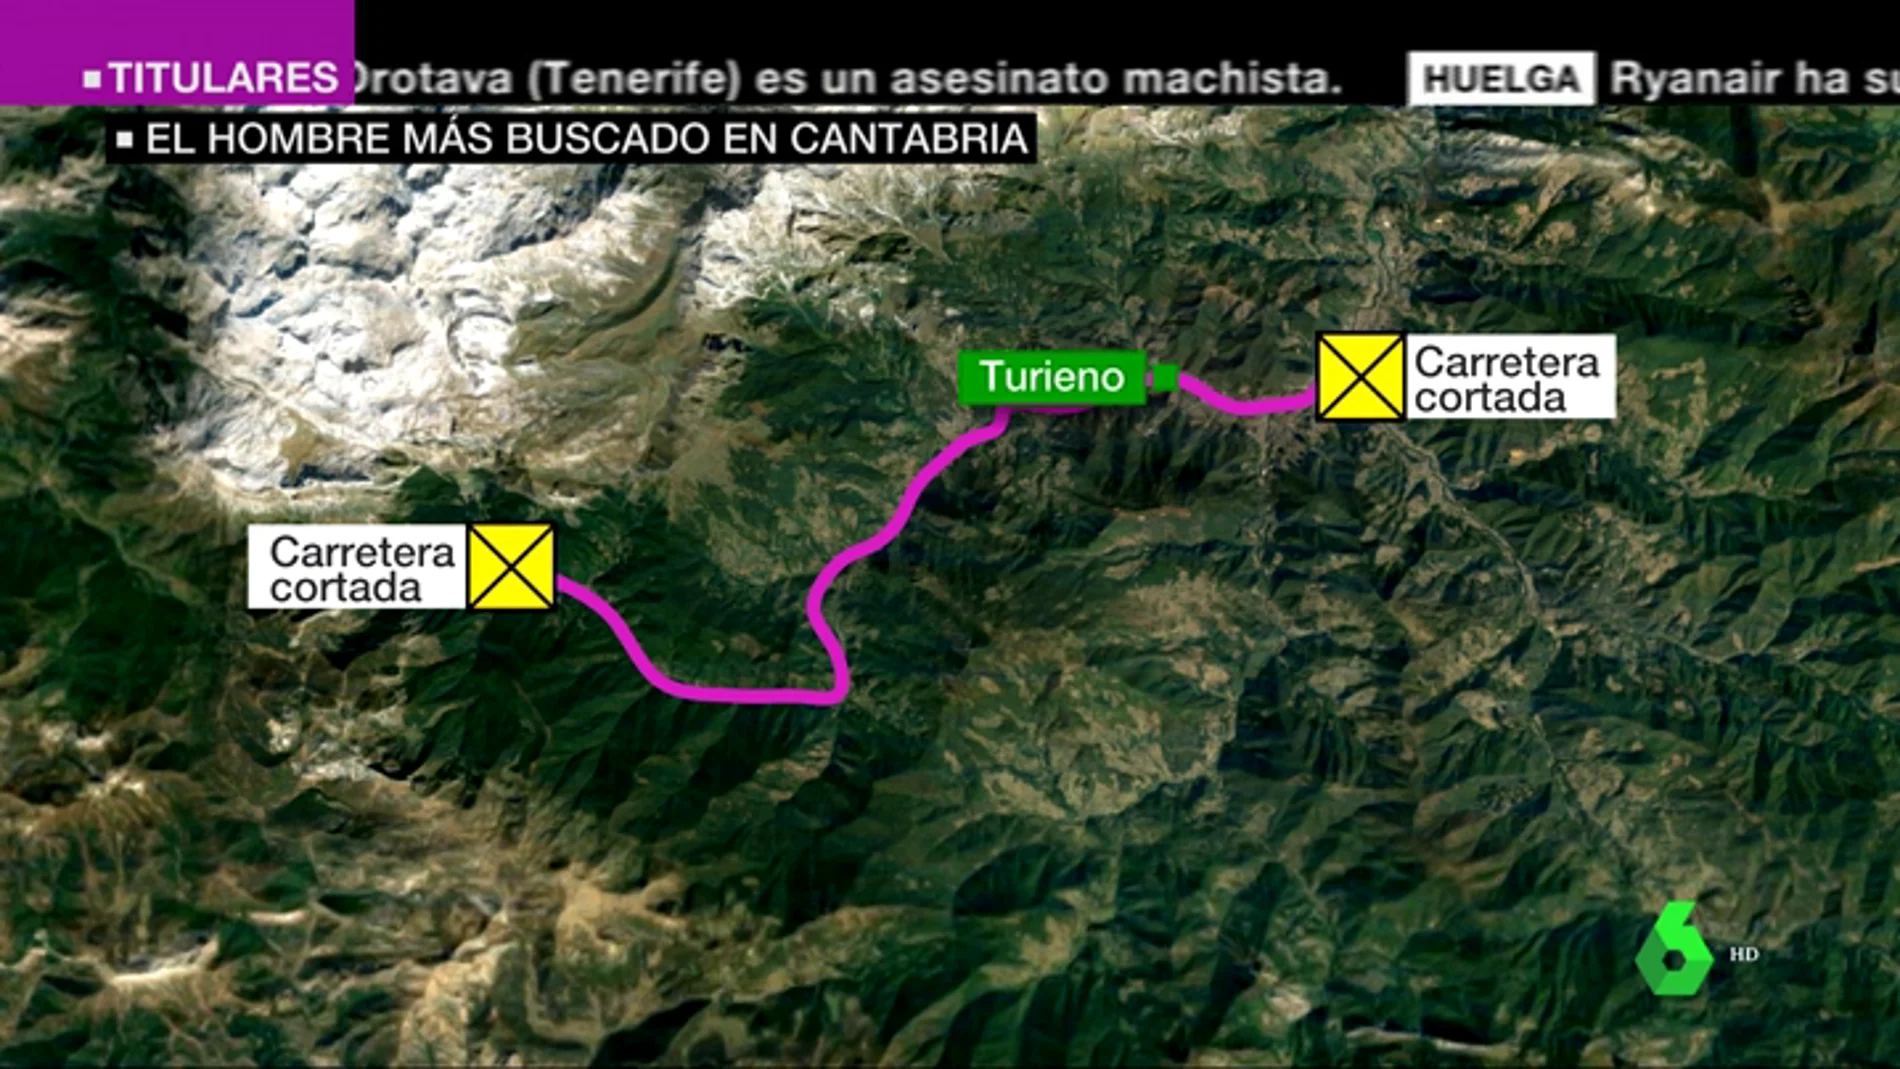 VÍDEO REEMPLAZO | La Guardia Civil cree que el huido de Turieno puede ir armado y pide no acercarse a la zona